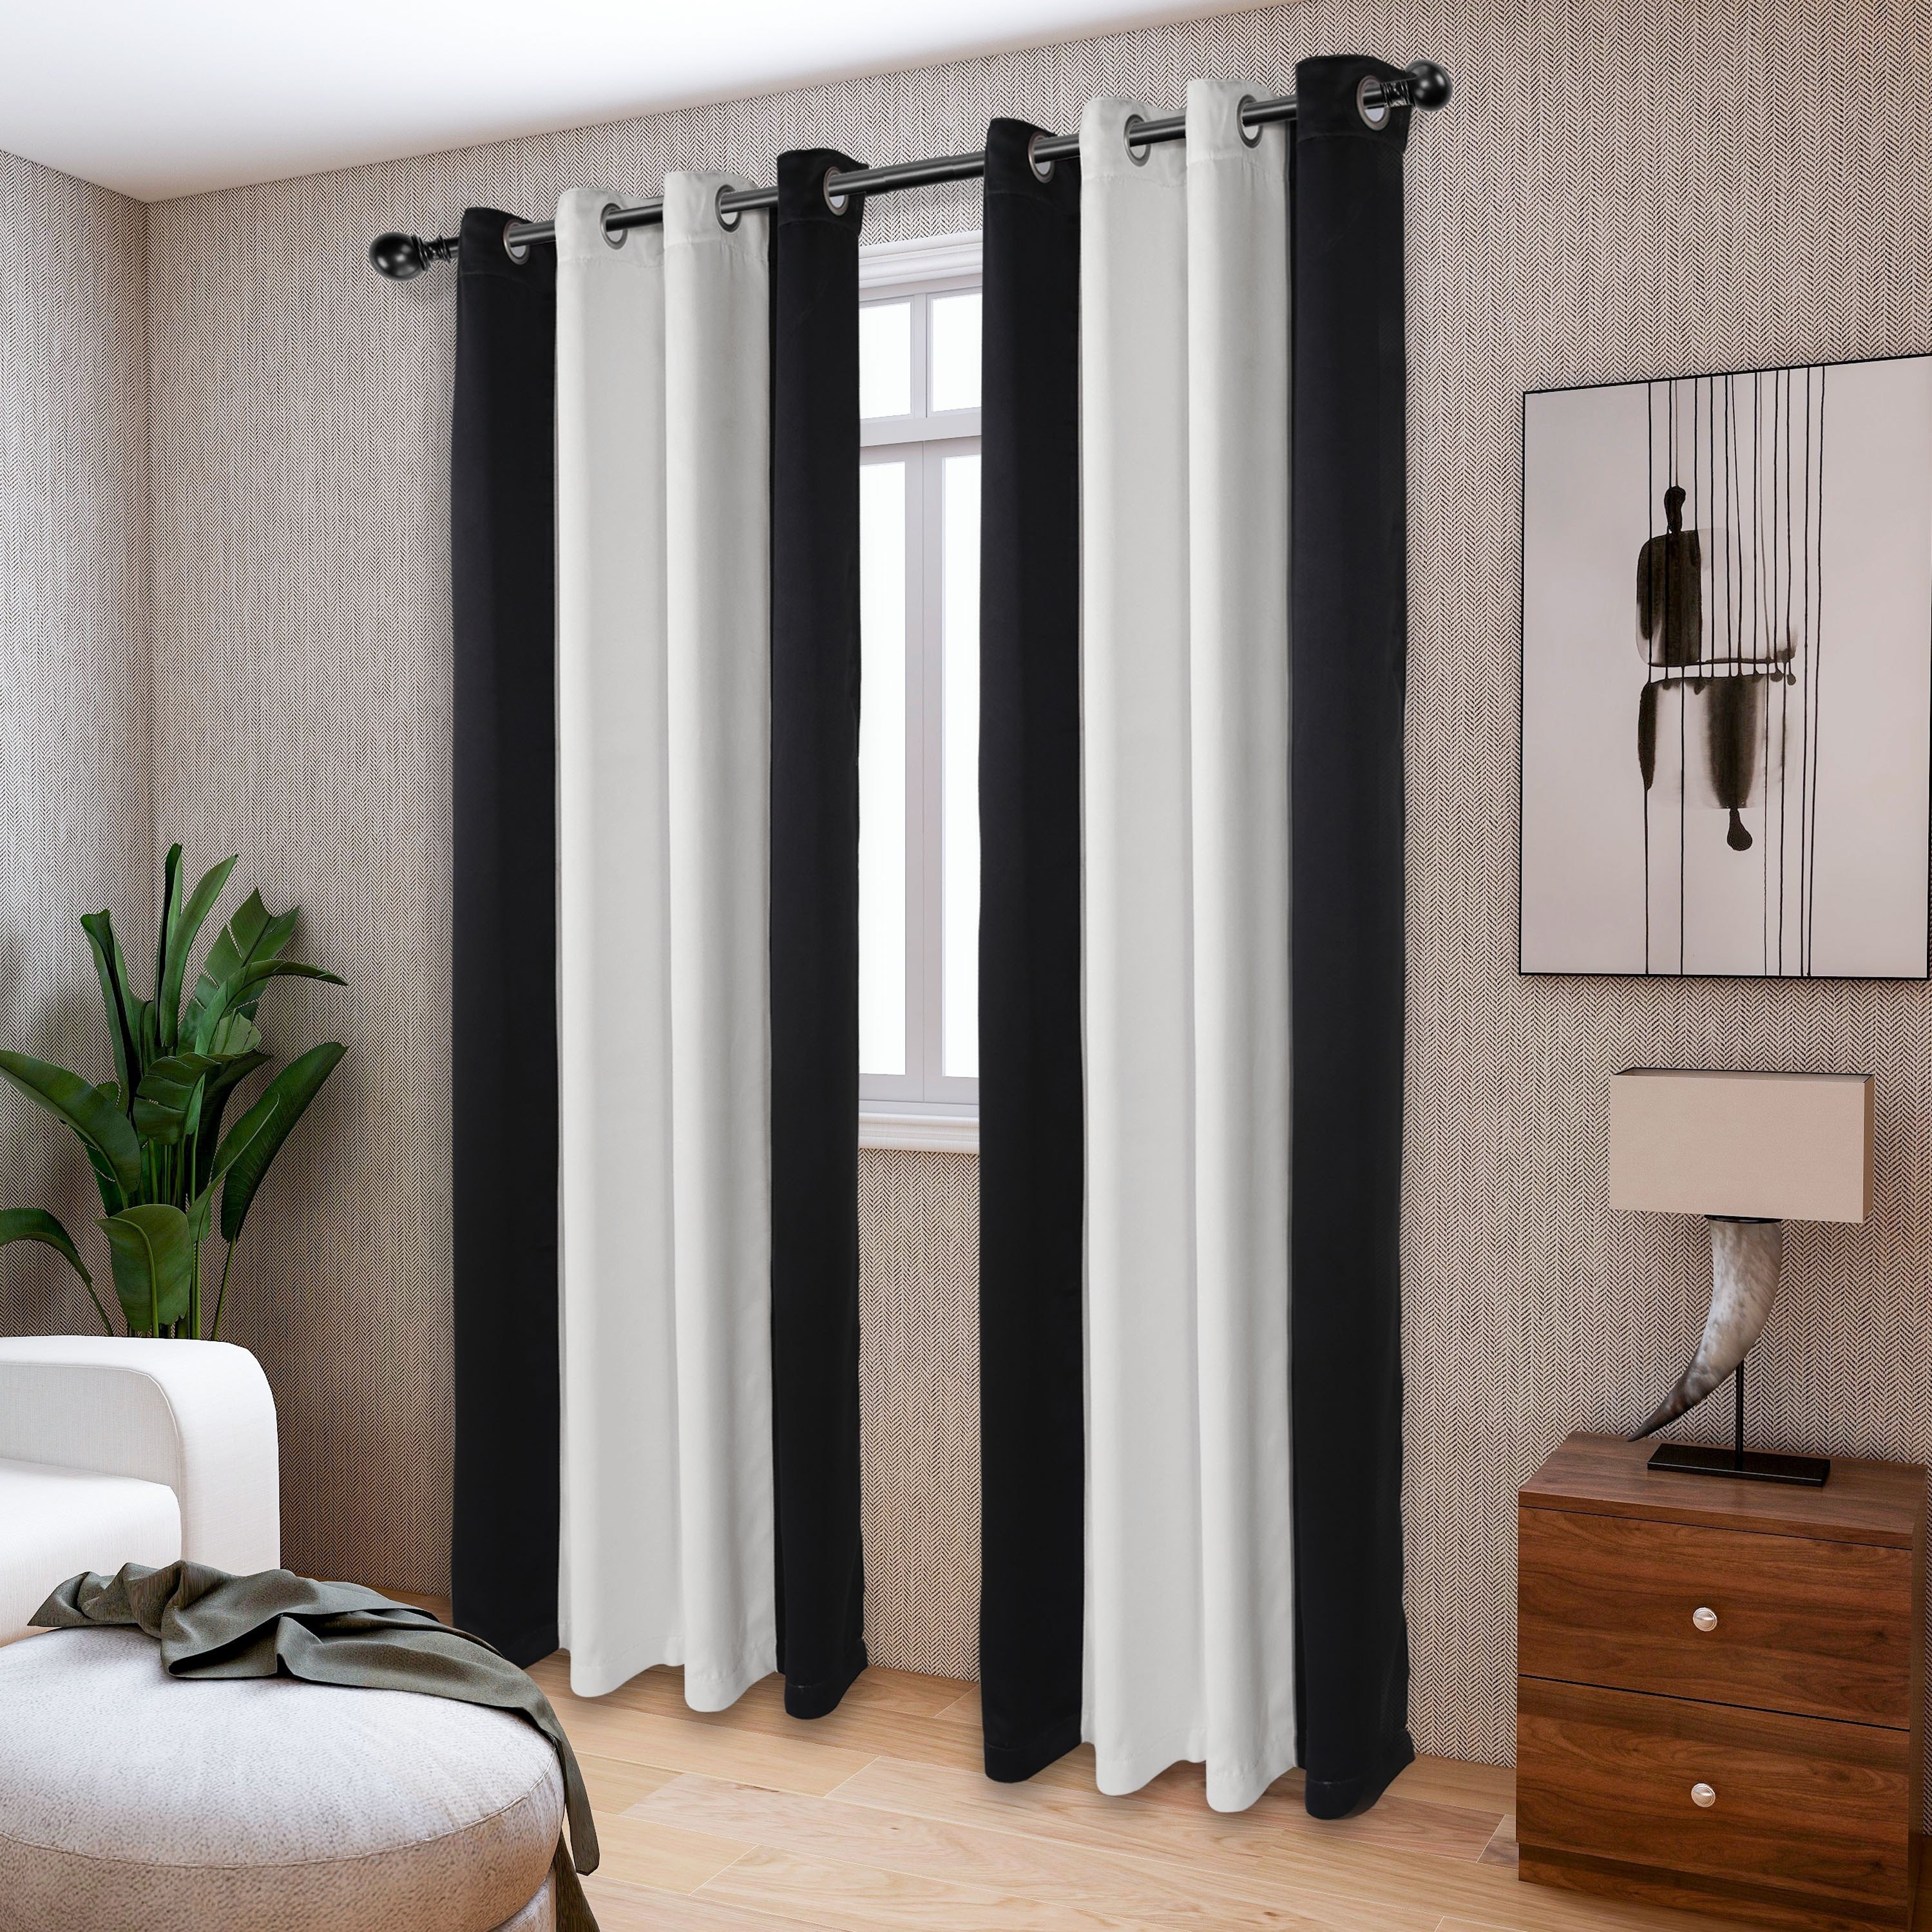  HALOUK Cortina translúcida con aislamiento térmico, cortina  opaca decorativa con ojales, 1 cortinas para dormitorio, sala de estar,  59.1 x 106.3 in-F : Hogar y Cocina